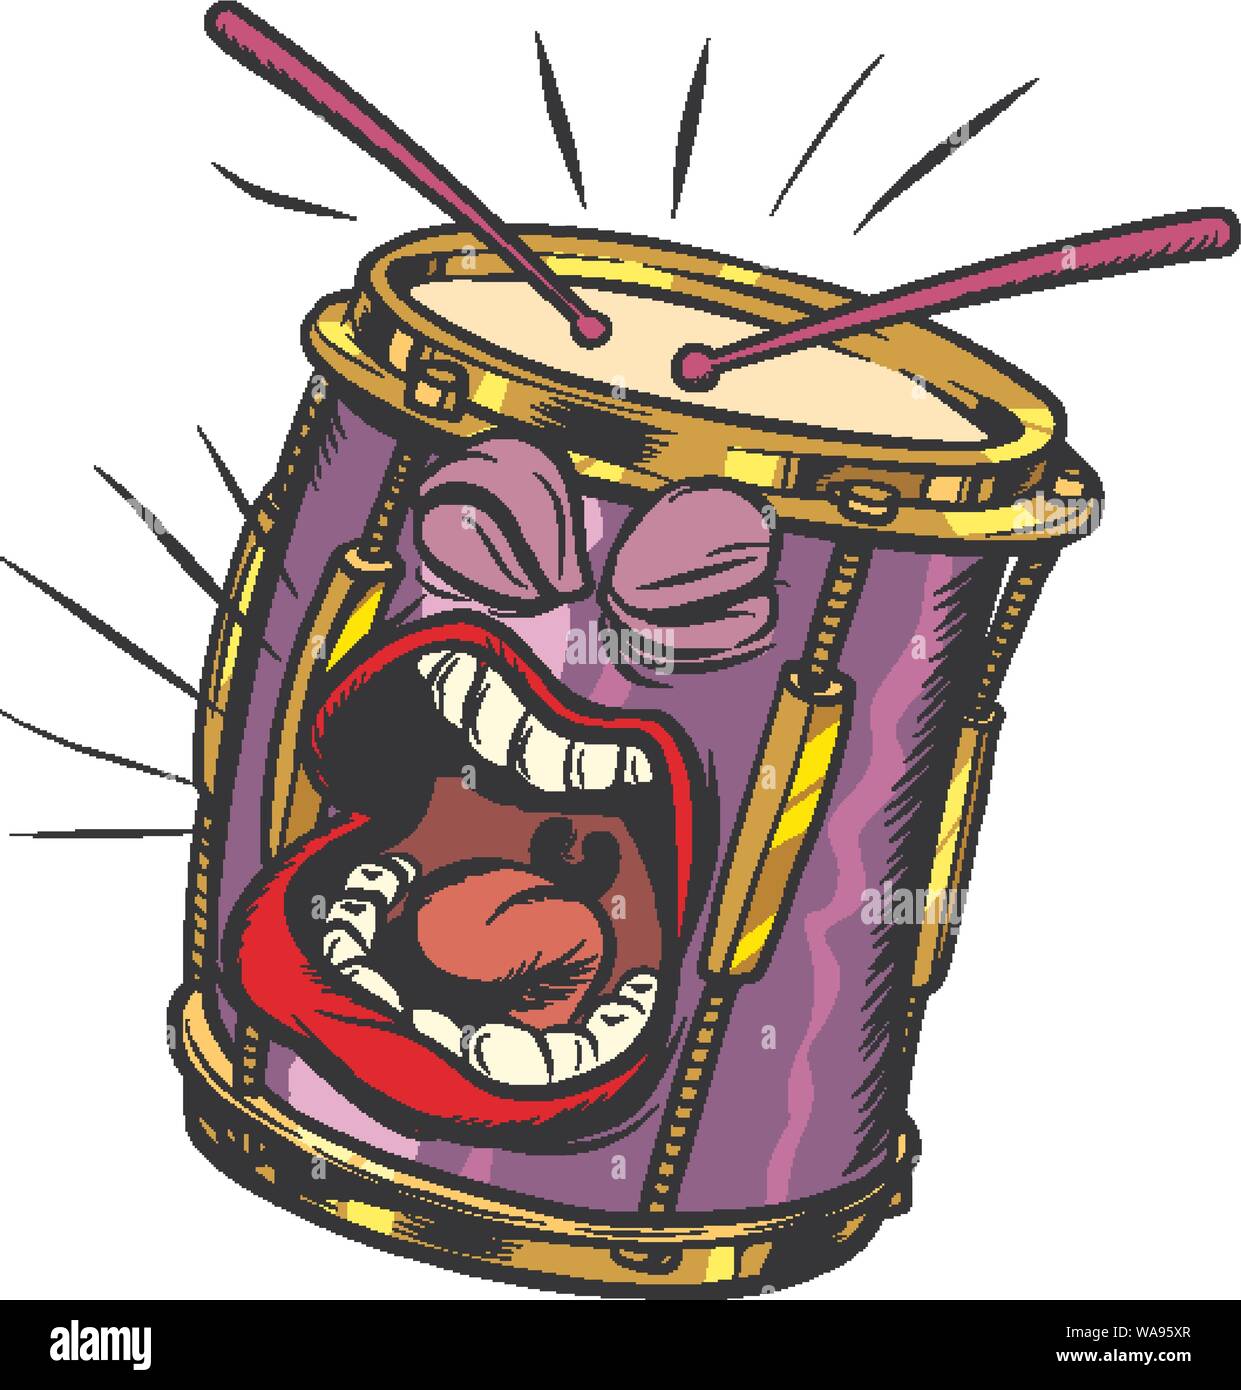 Emoji-zeichen emotion Trommel Musikinstrument. Pop Art retro Vektor illustration Zeichnung Stock Vektor